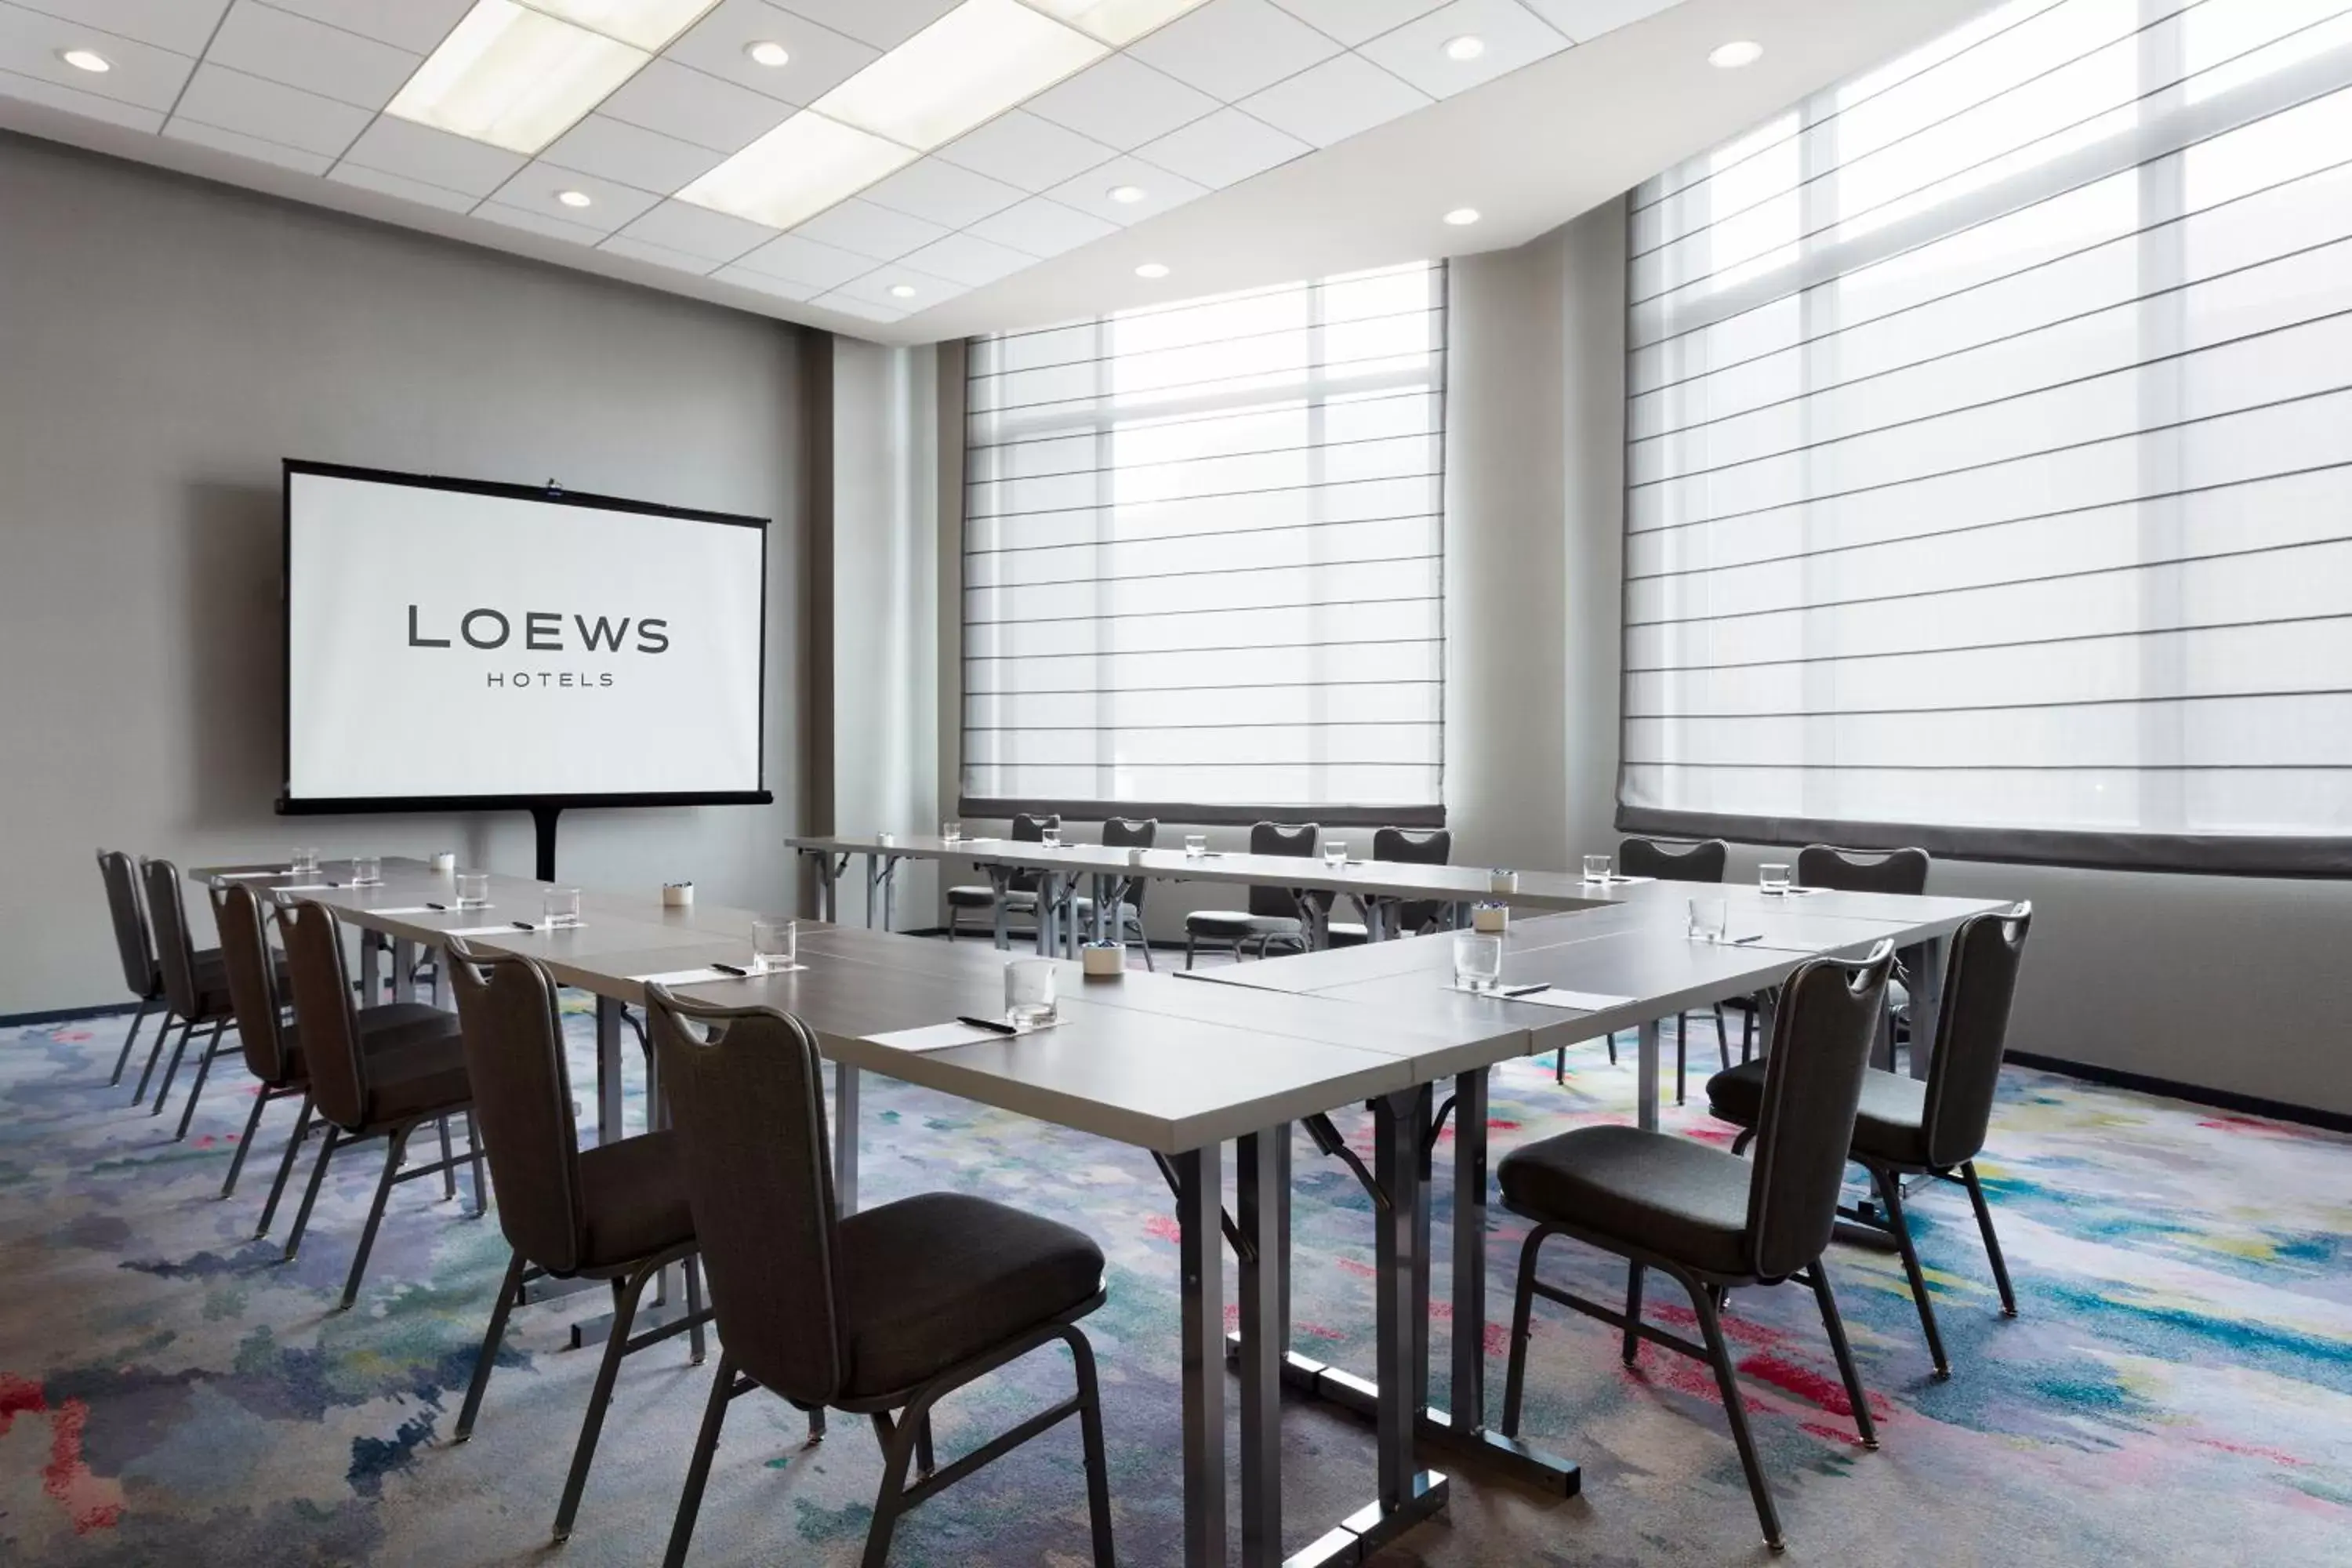 Meeting/conference room in Loews Minneapolis Hotel